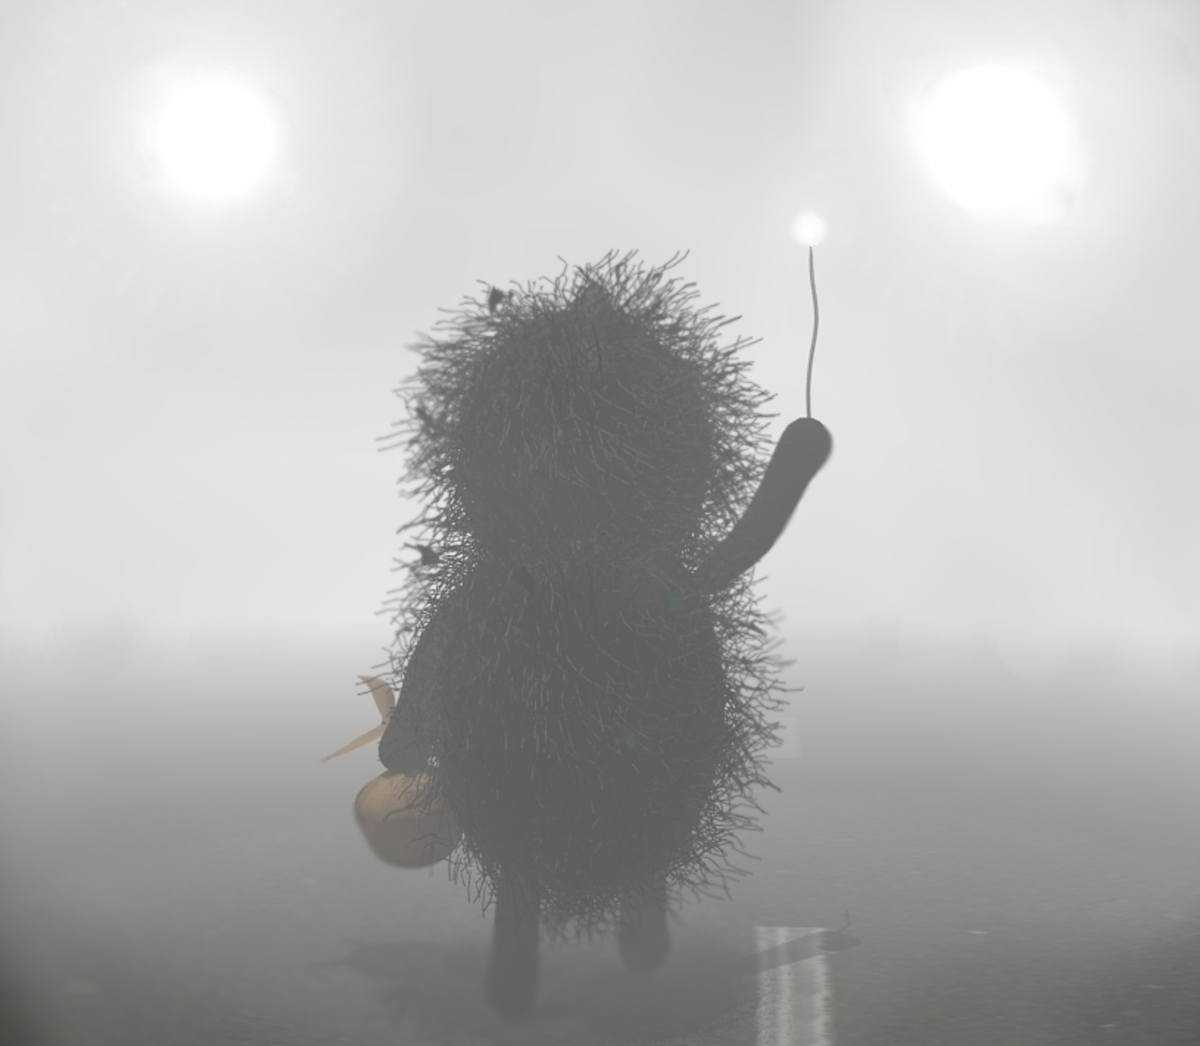 Ежик уходит в туман. Ушла в туман. Ежик уходящий в туман. Ёжик в тумане с узелком. Ты ушла в эту легкий туман